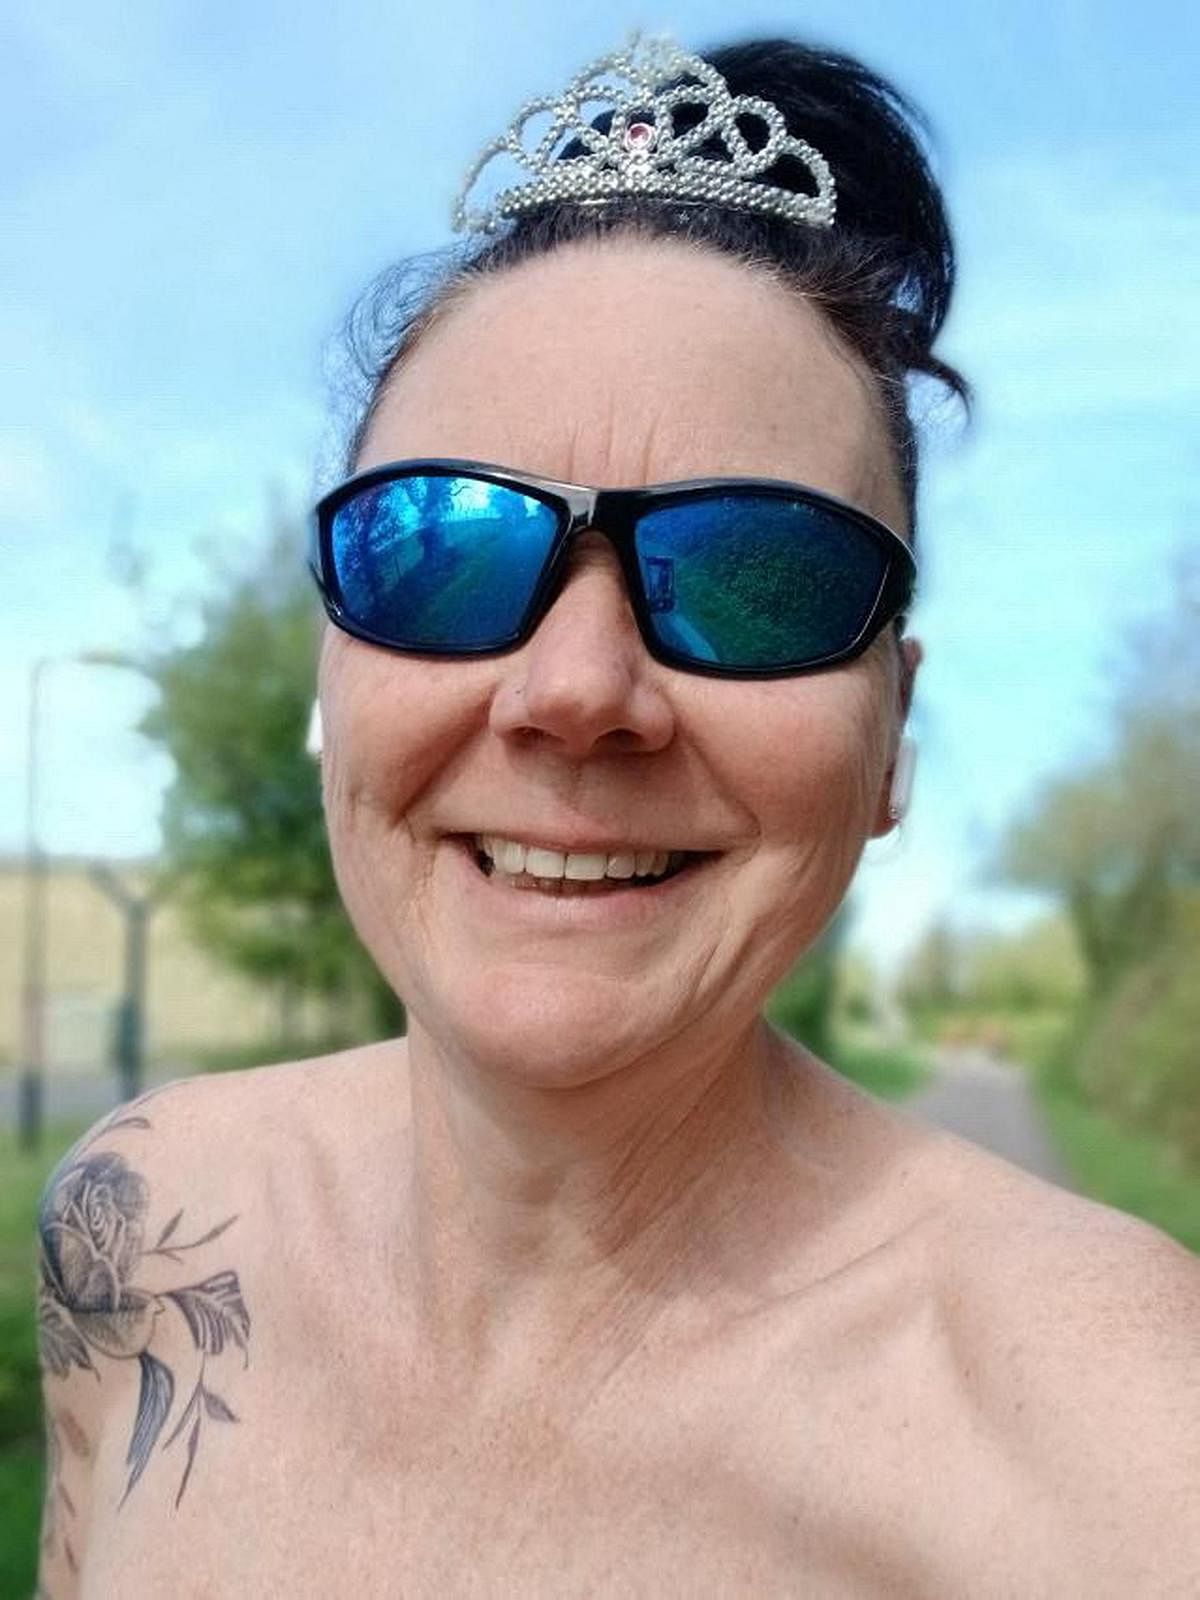 Breast cancer survivor to run London marathon topless to help erase mastectomy stigma